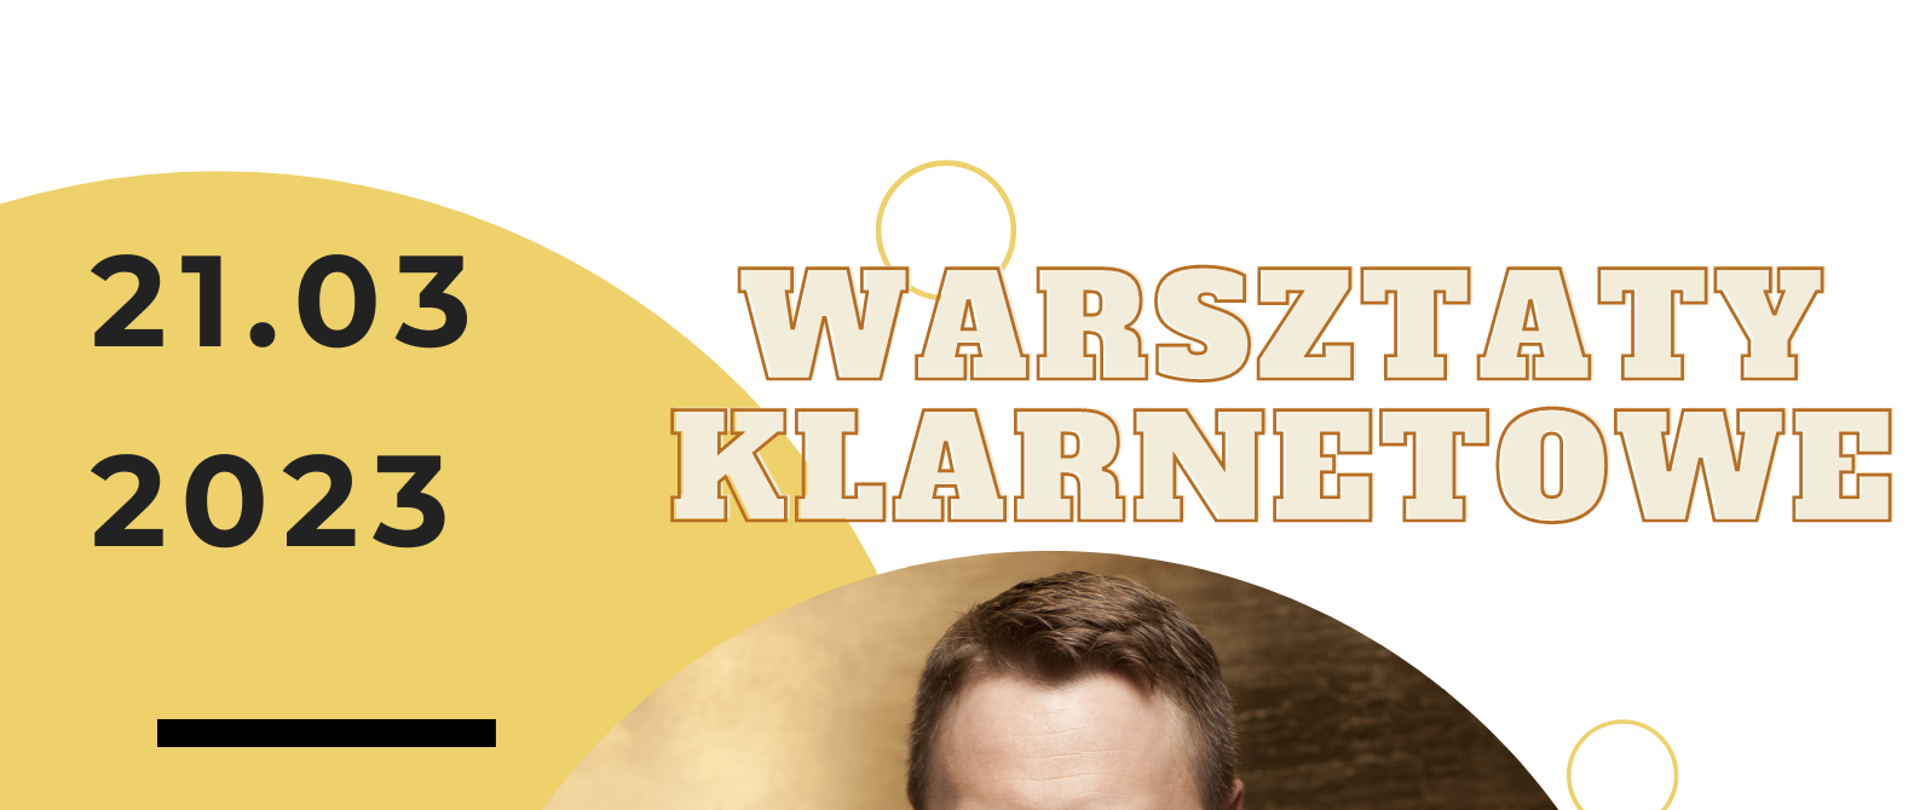 Plakat informujący o warsztatach klarnetowych i koncercie w dniu 21 marca 2023. Na biało-żółtym tle znajduje się zdjęcie dra Krzysztofa Krzyżewskiego trzymającego klarnet.